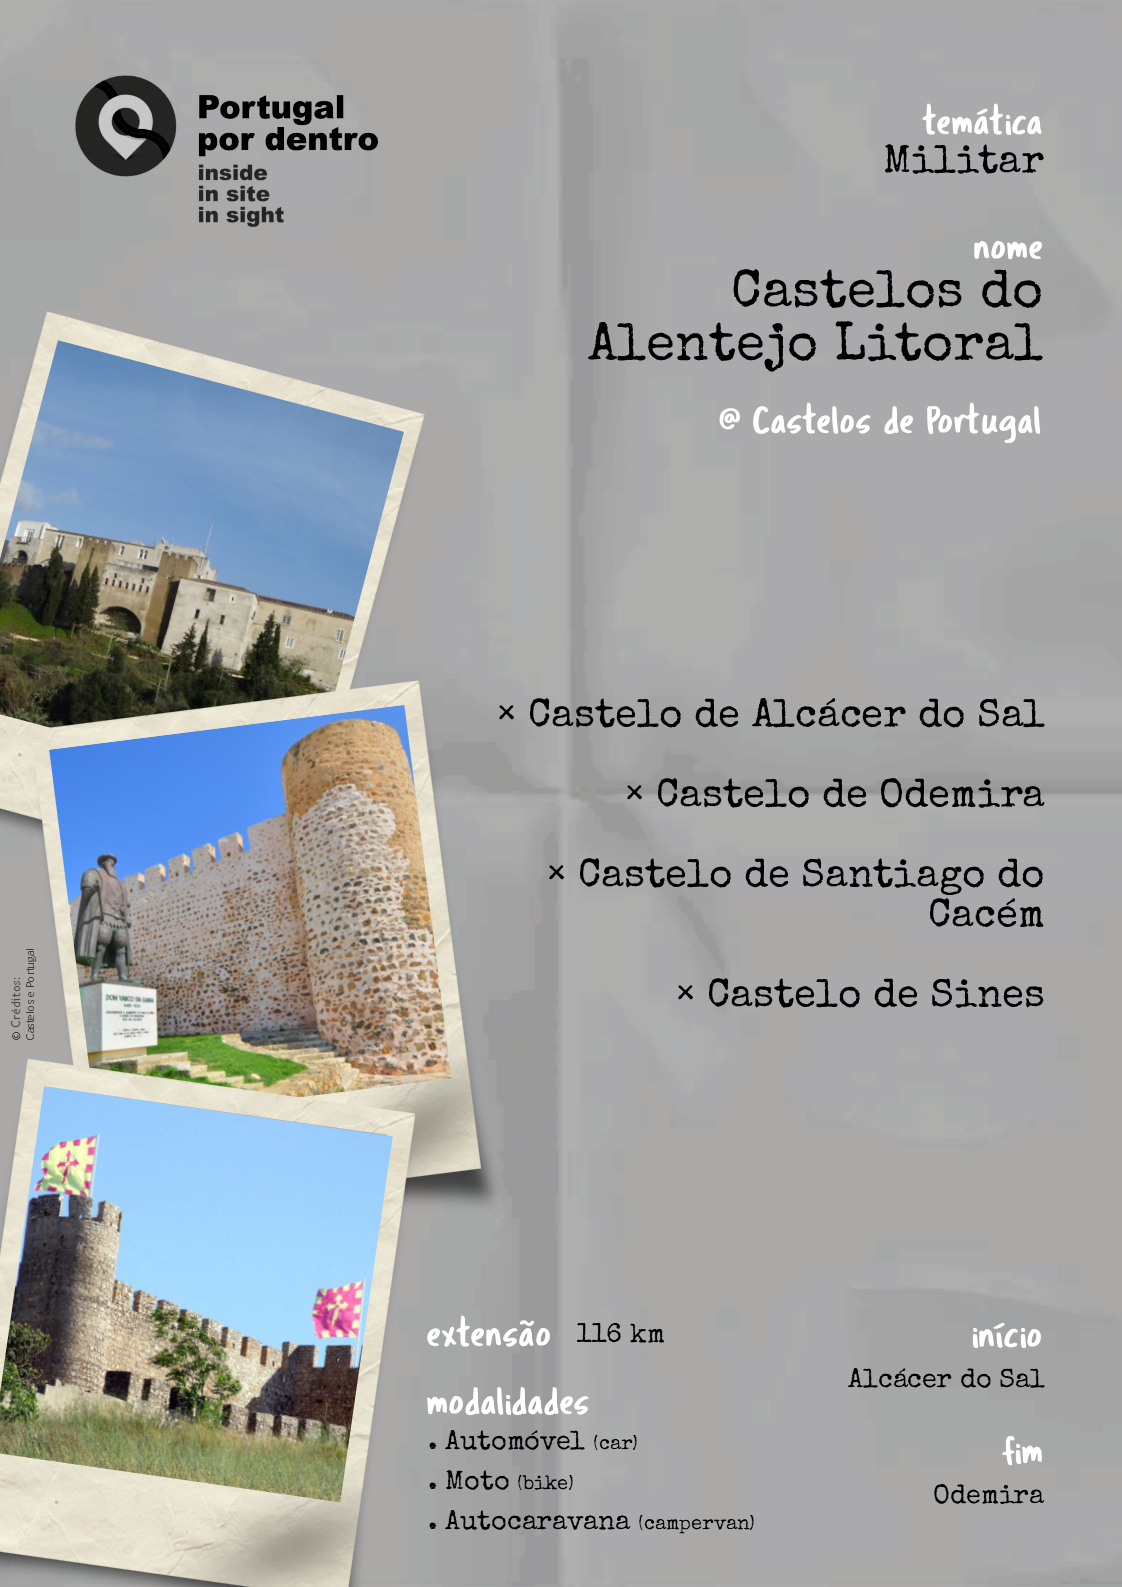 Castelos do Alentejo Litoral